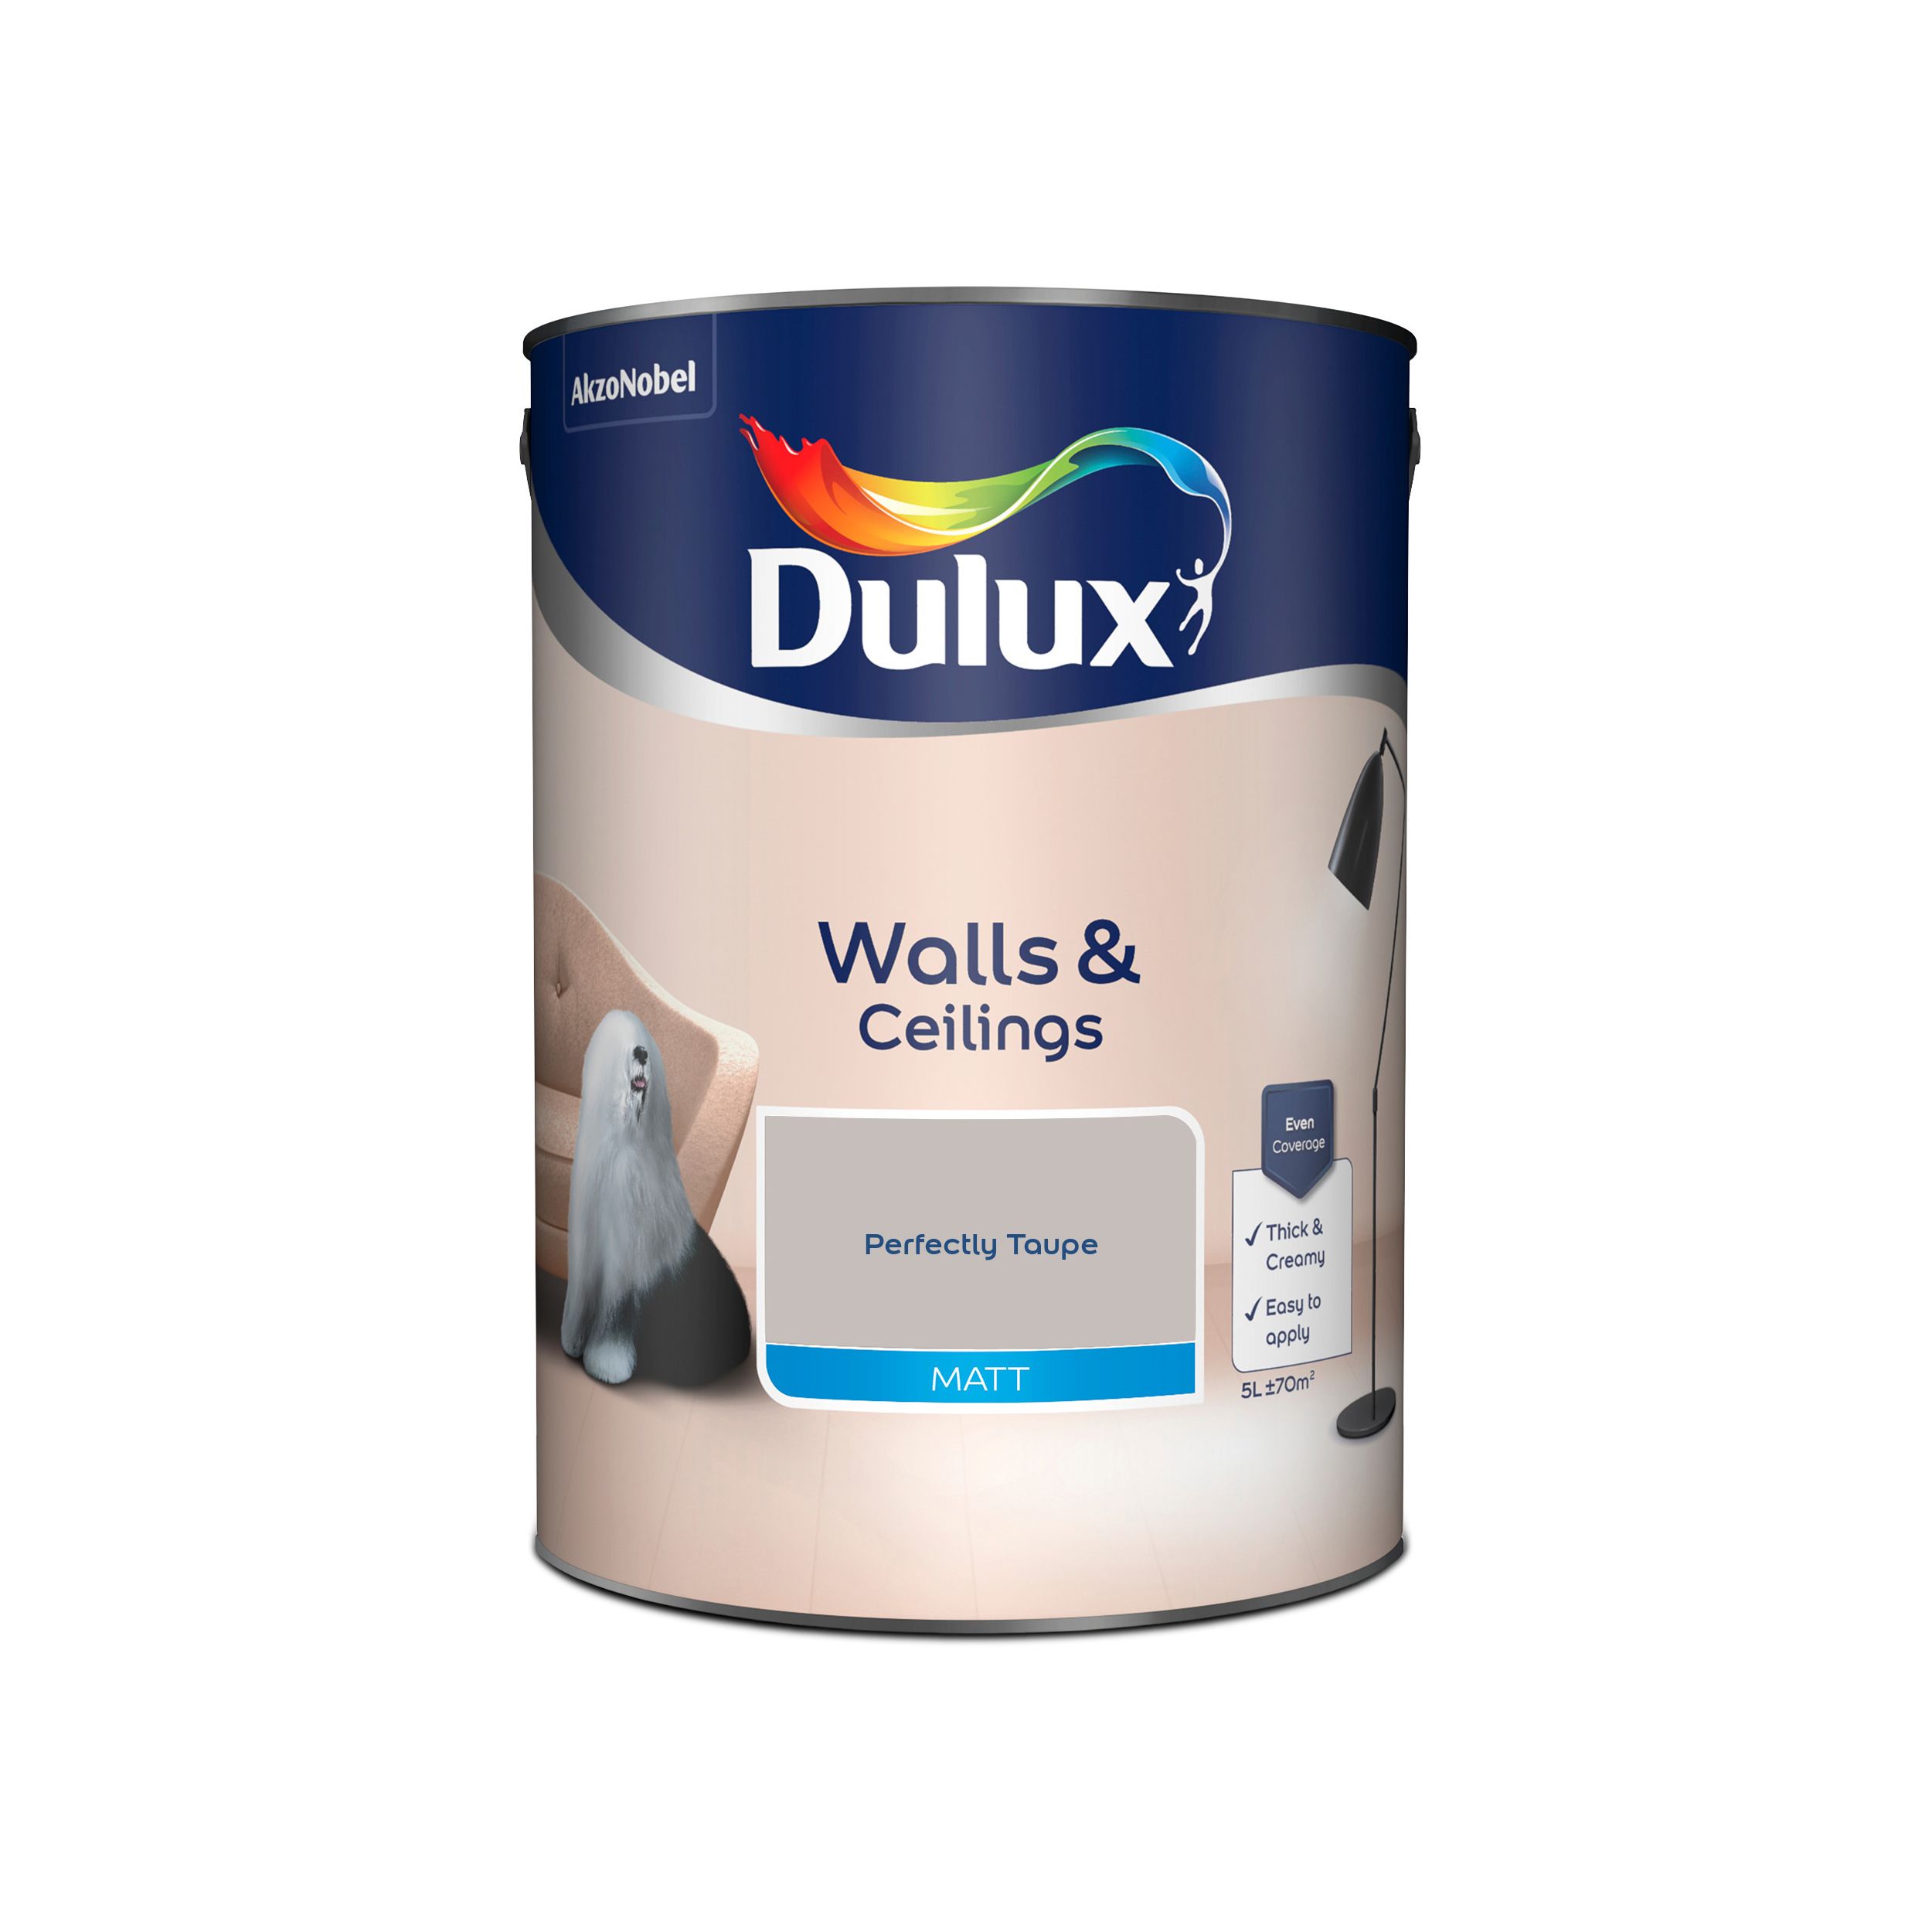 Wilko Tough & Washable Soft Taupe Matt Emulsion Paint (2.5 Litre